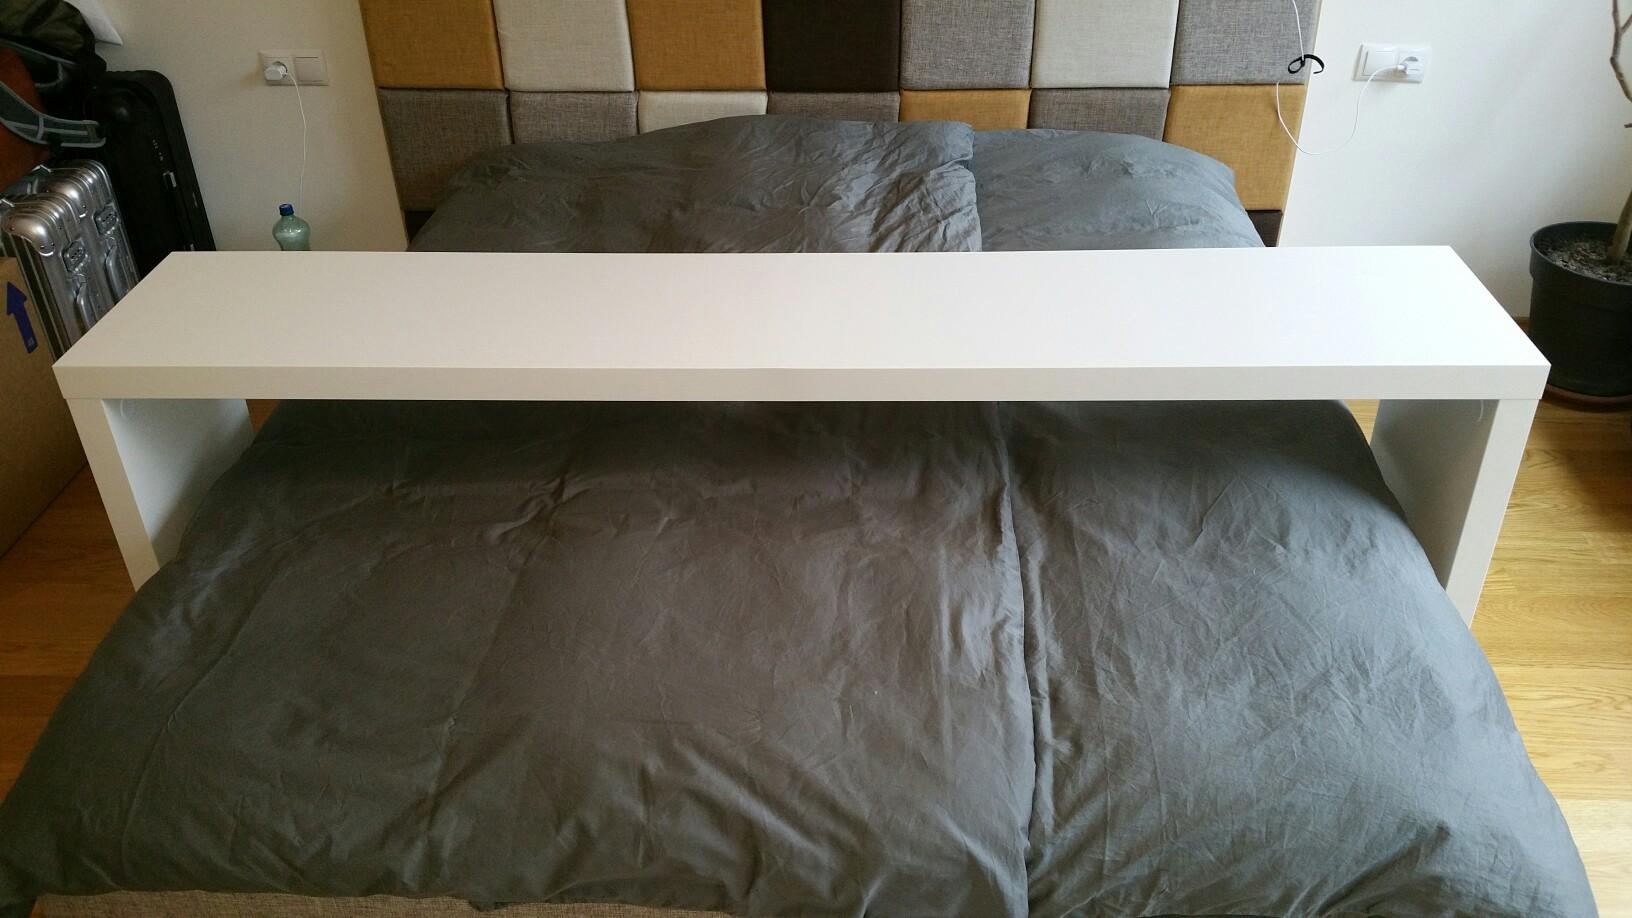 Ikea Malm Bett Tisch Ablagetisch wei 223 in 6840 G 246 tzis f 252 r 25 00 zum 